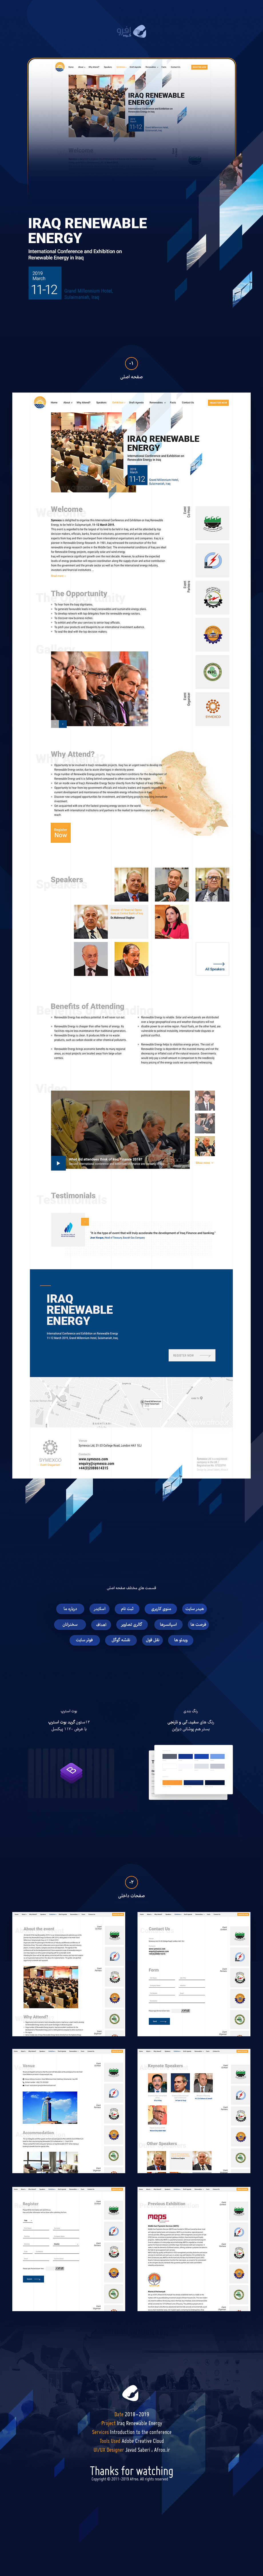 طراحی گرافیک وب، طراحی رابط کاربری و تجربی وب سایت کنفرانس بین المللی انرژی های تجدید پذیر کشور عراق